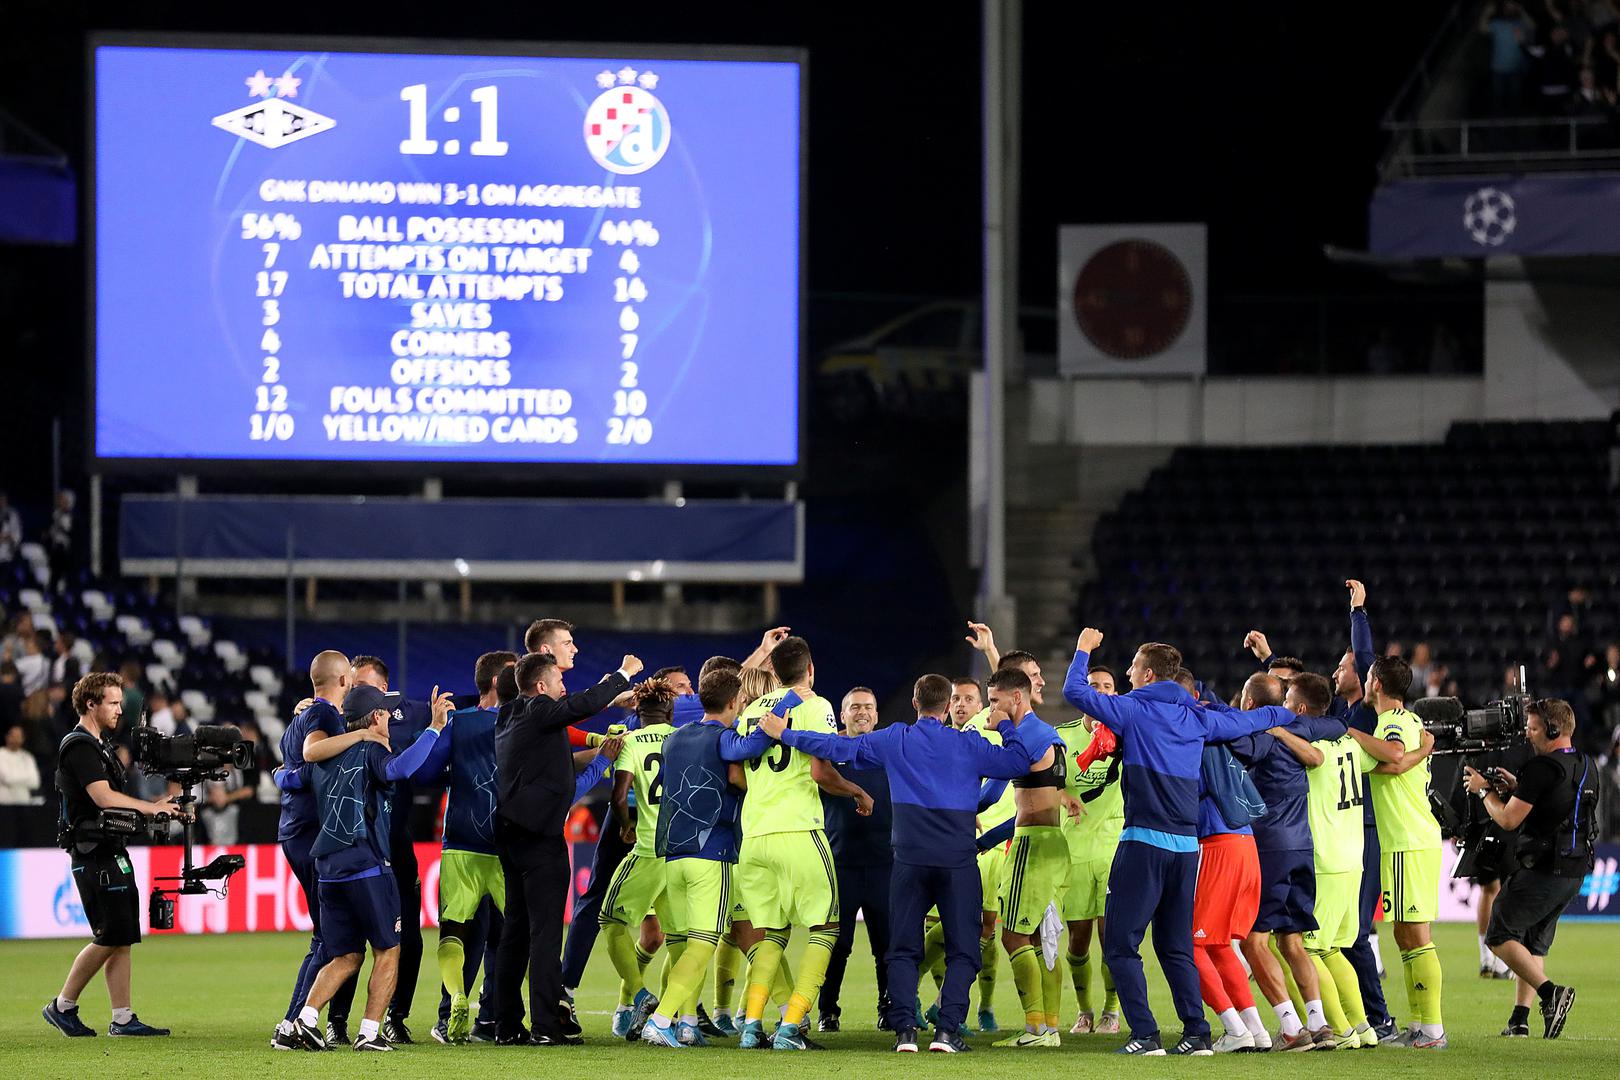 Dinamovi igrači u Norveškoj su protiv Rosenborga izborili Ligu prvaka, a nakon utakmice uputili su se u Zagreb gdje su se išli odmoriti, a tamo su ih čekale njihove 'bolje polovice'. 